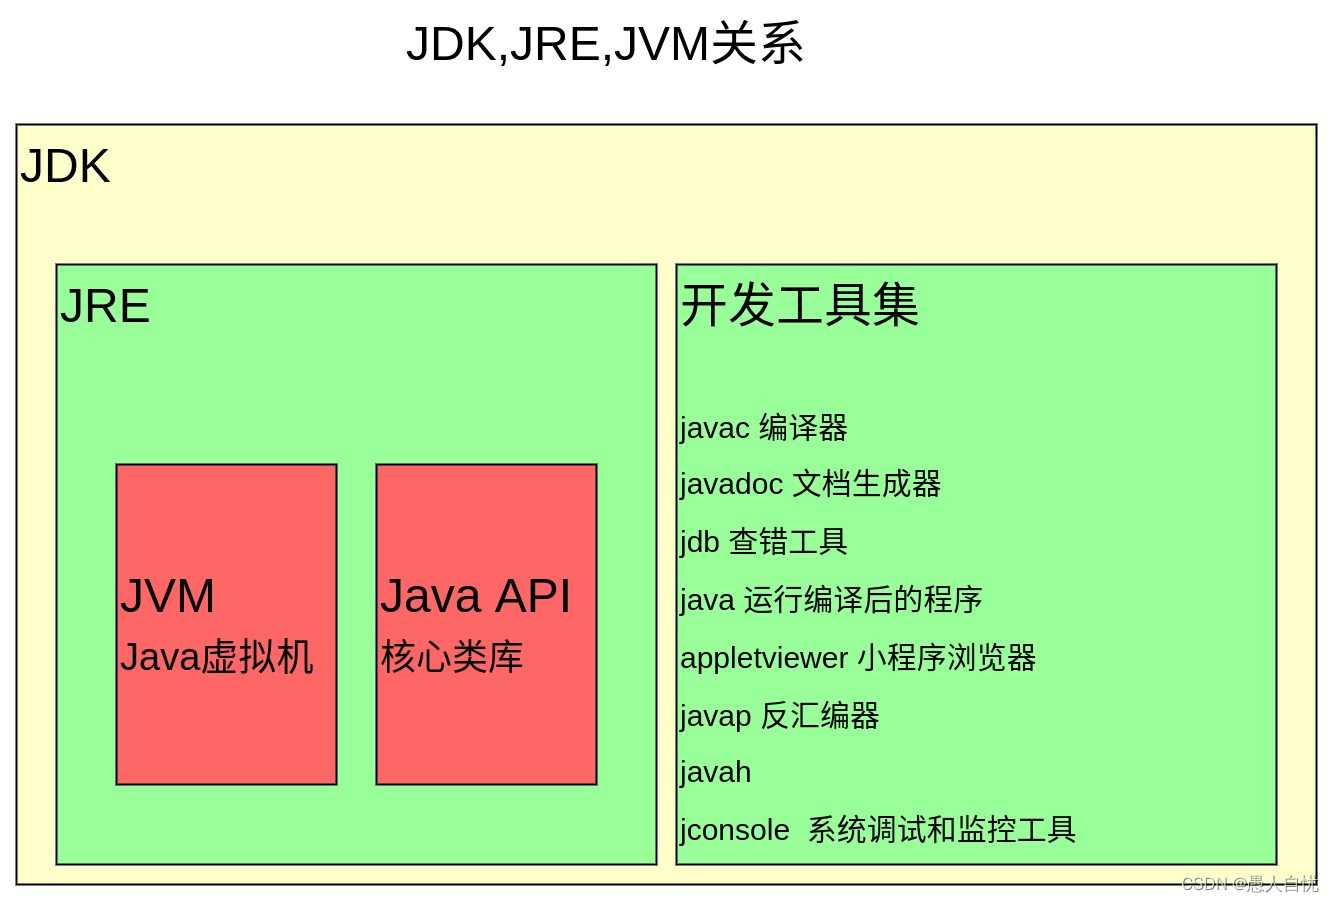 1. JDK、JRE、JVM及Java版本